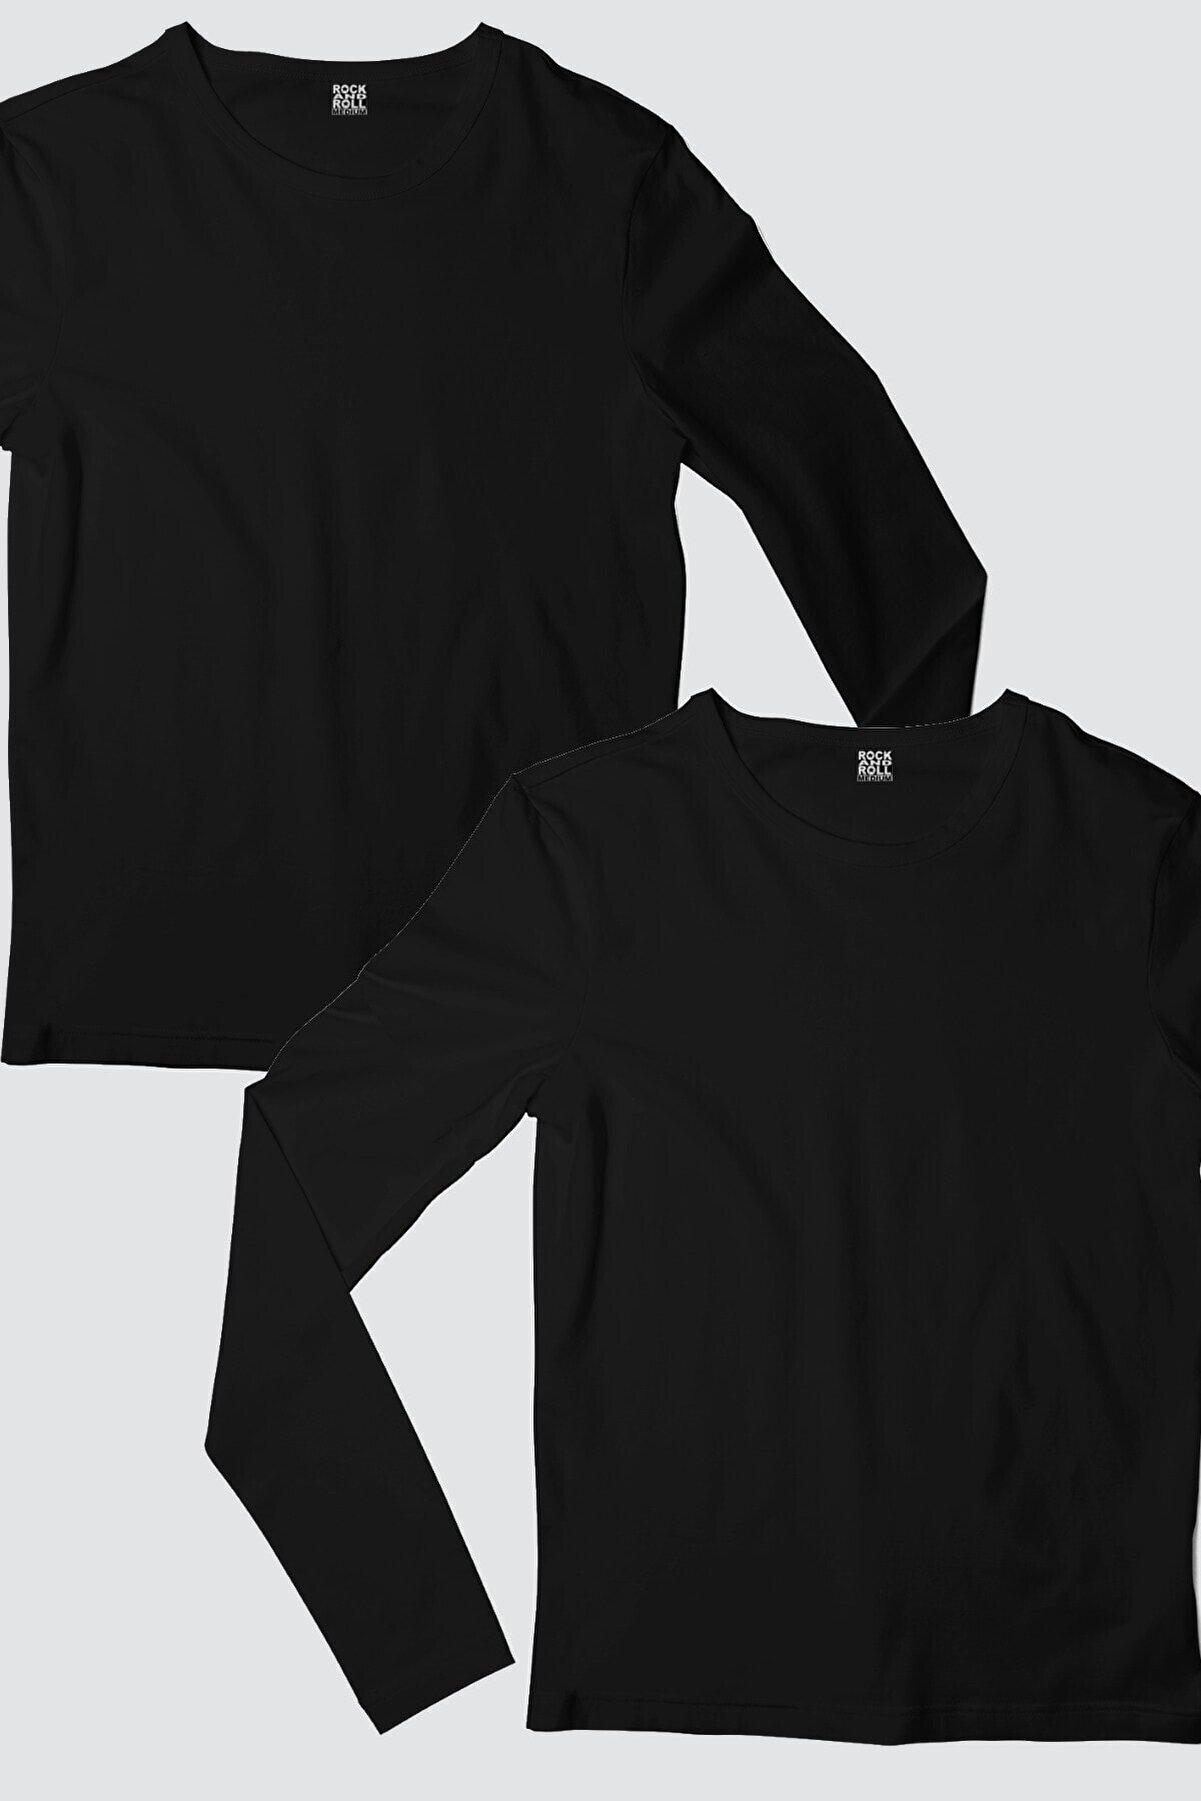 Düz, Baskısız Siyah Uzun Kollu Kadın T-shirt 2'li Eko Paket